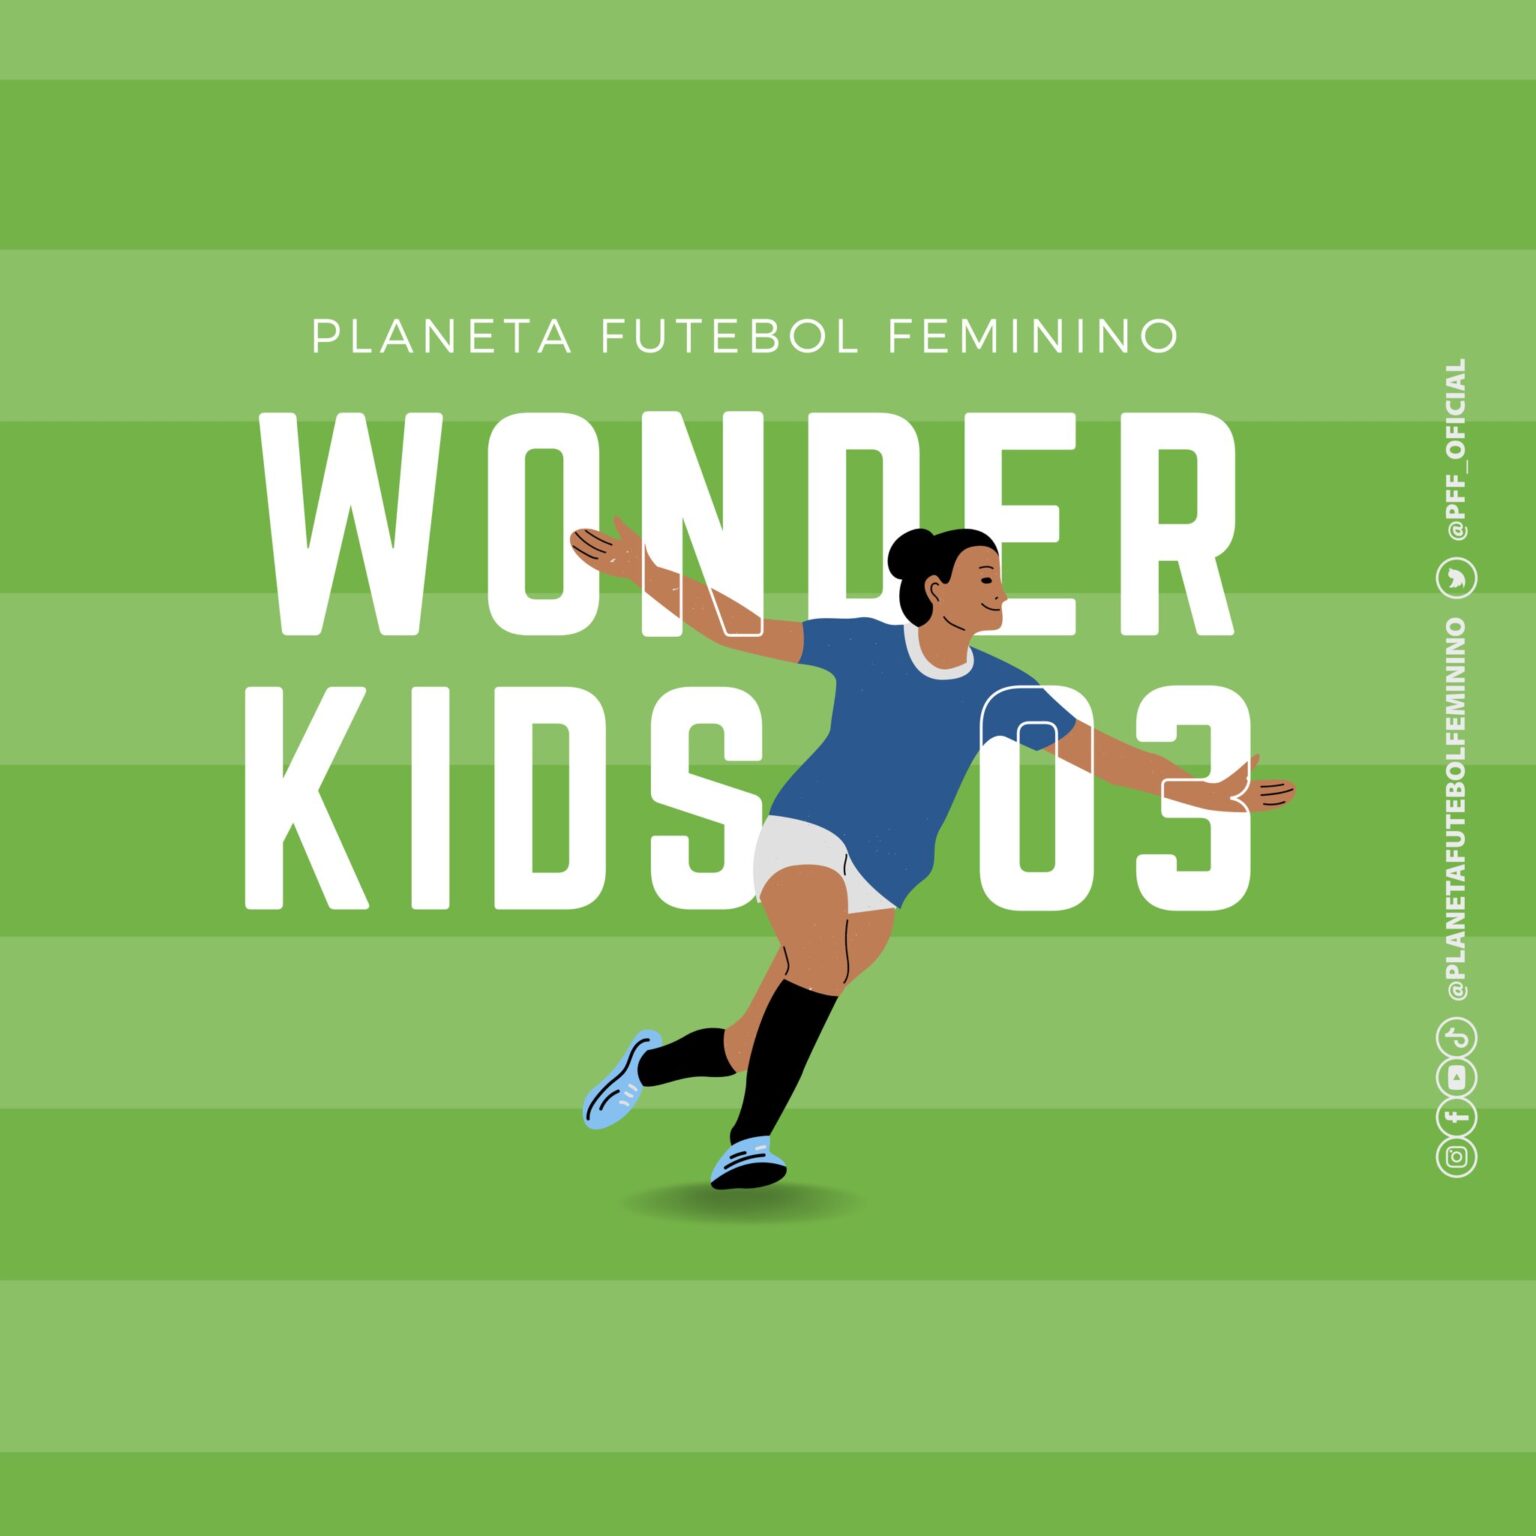 WONDERKIDS Futebol Feminino